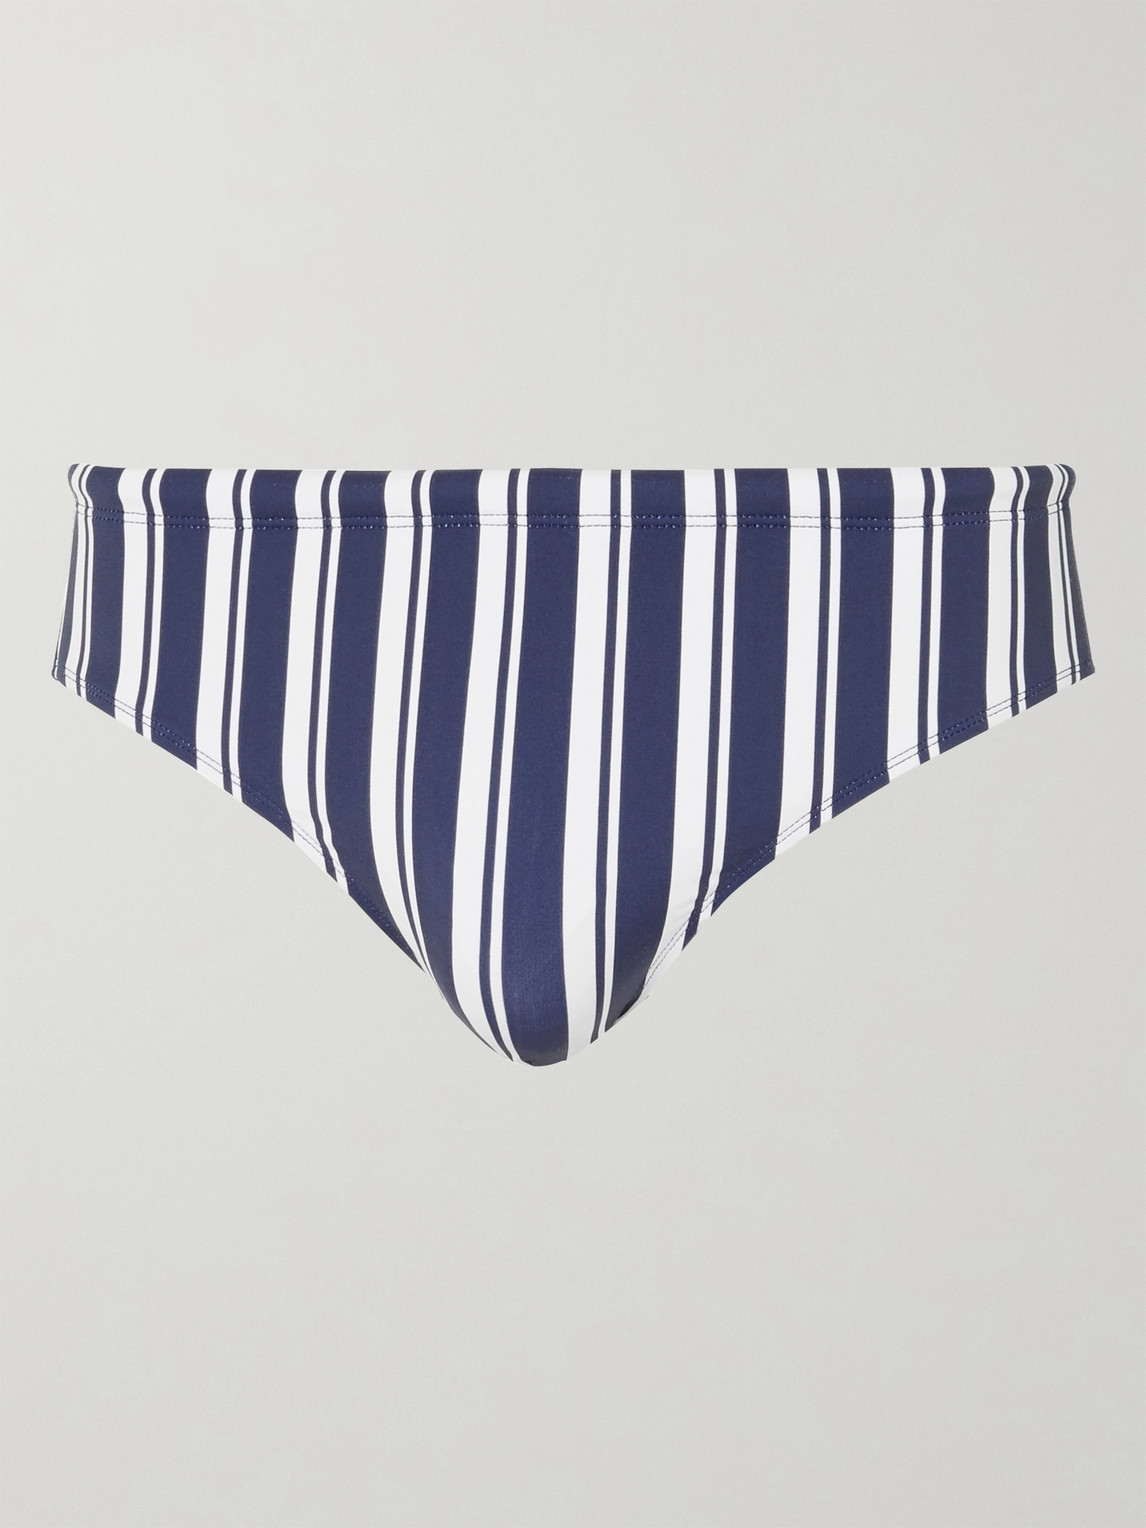 Orlebar Brown Dachshund Striped Swim Briefs In Blue